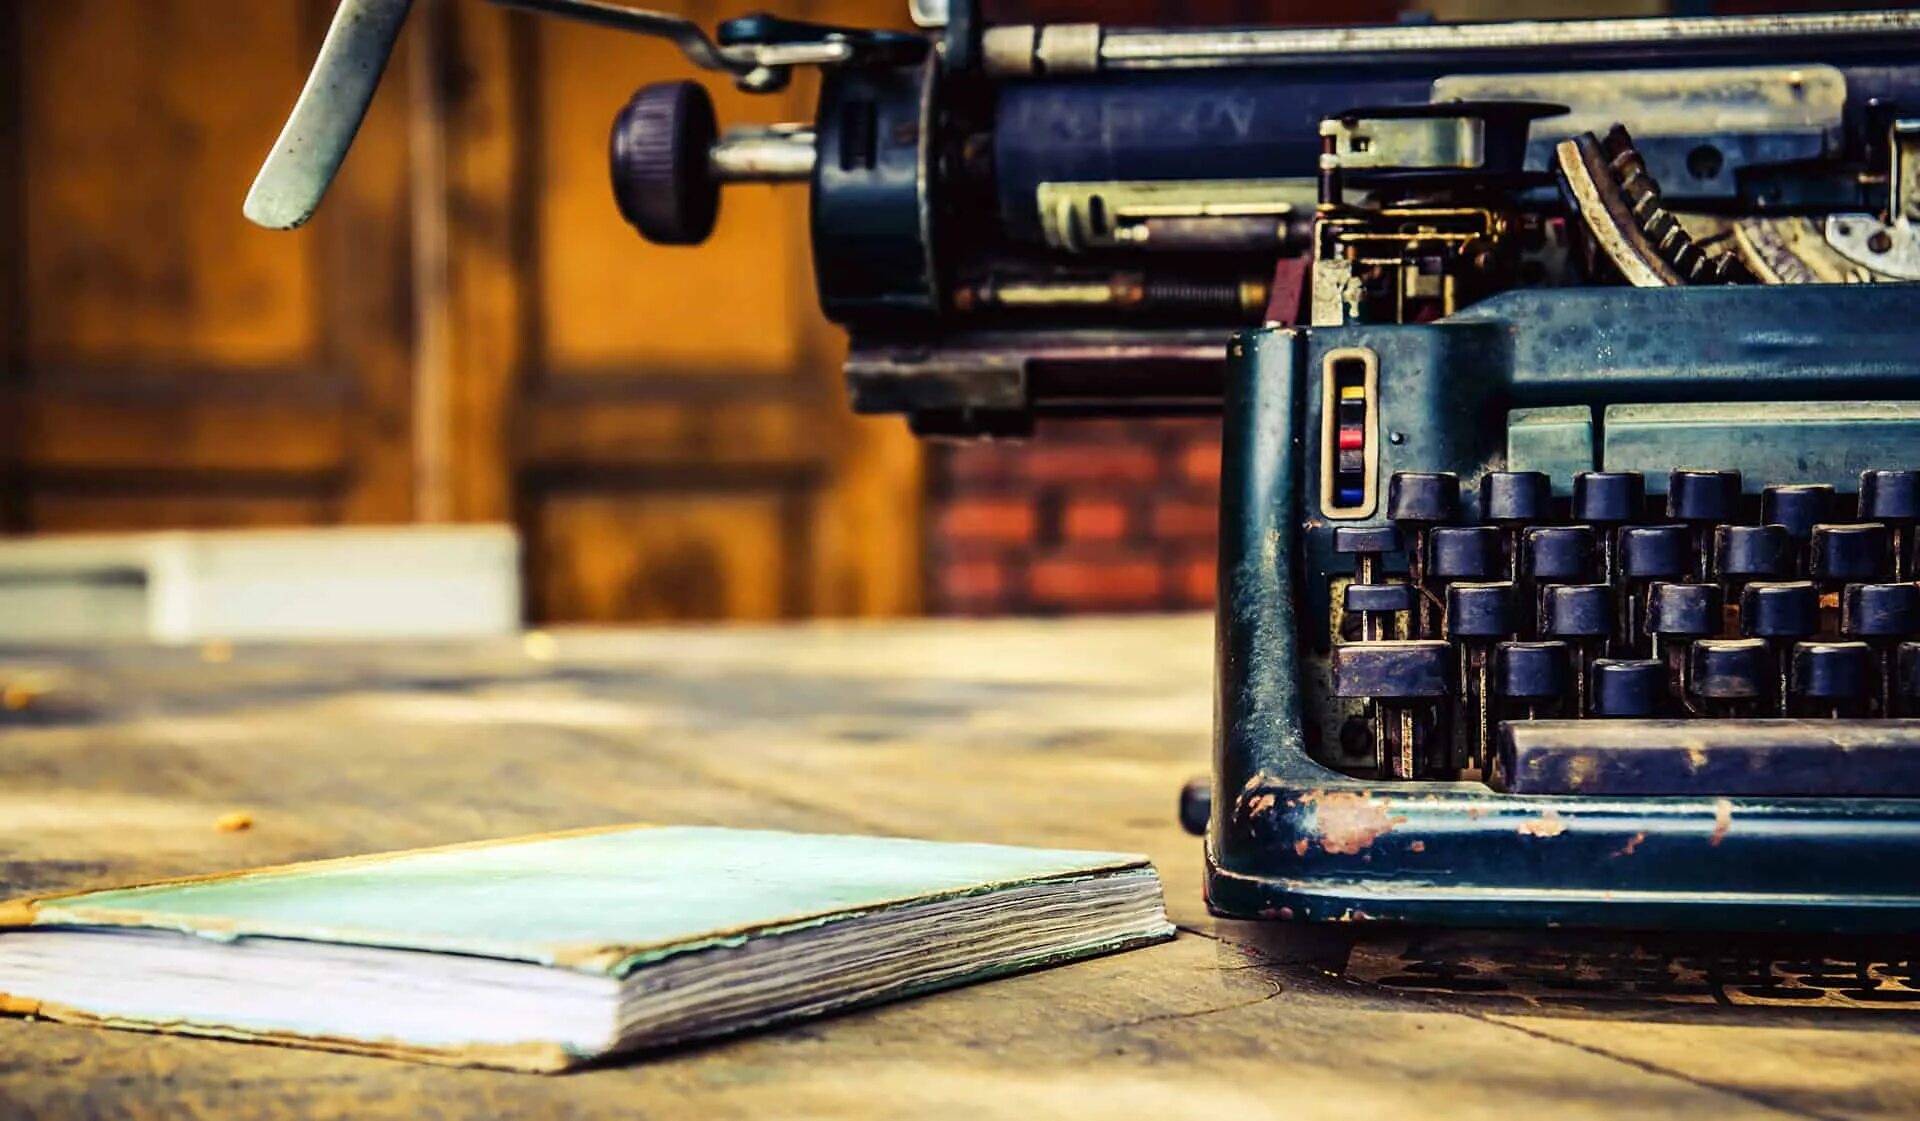 Печатная машинка на столе. Печатная машинка писатель. Писатели и машинки. Фотосессия с печатной машинкой. Писательство история